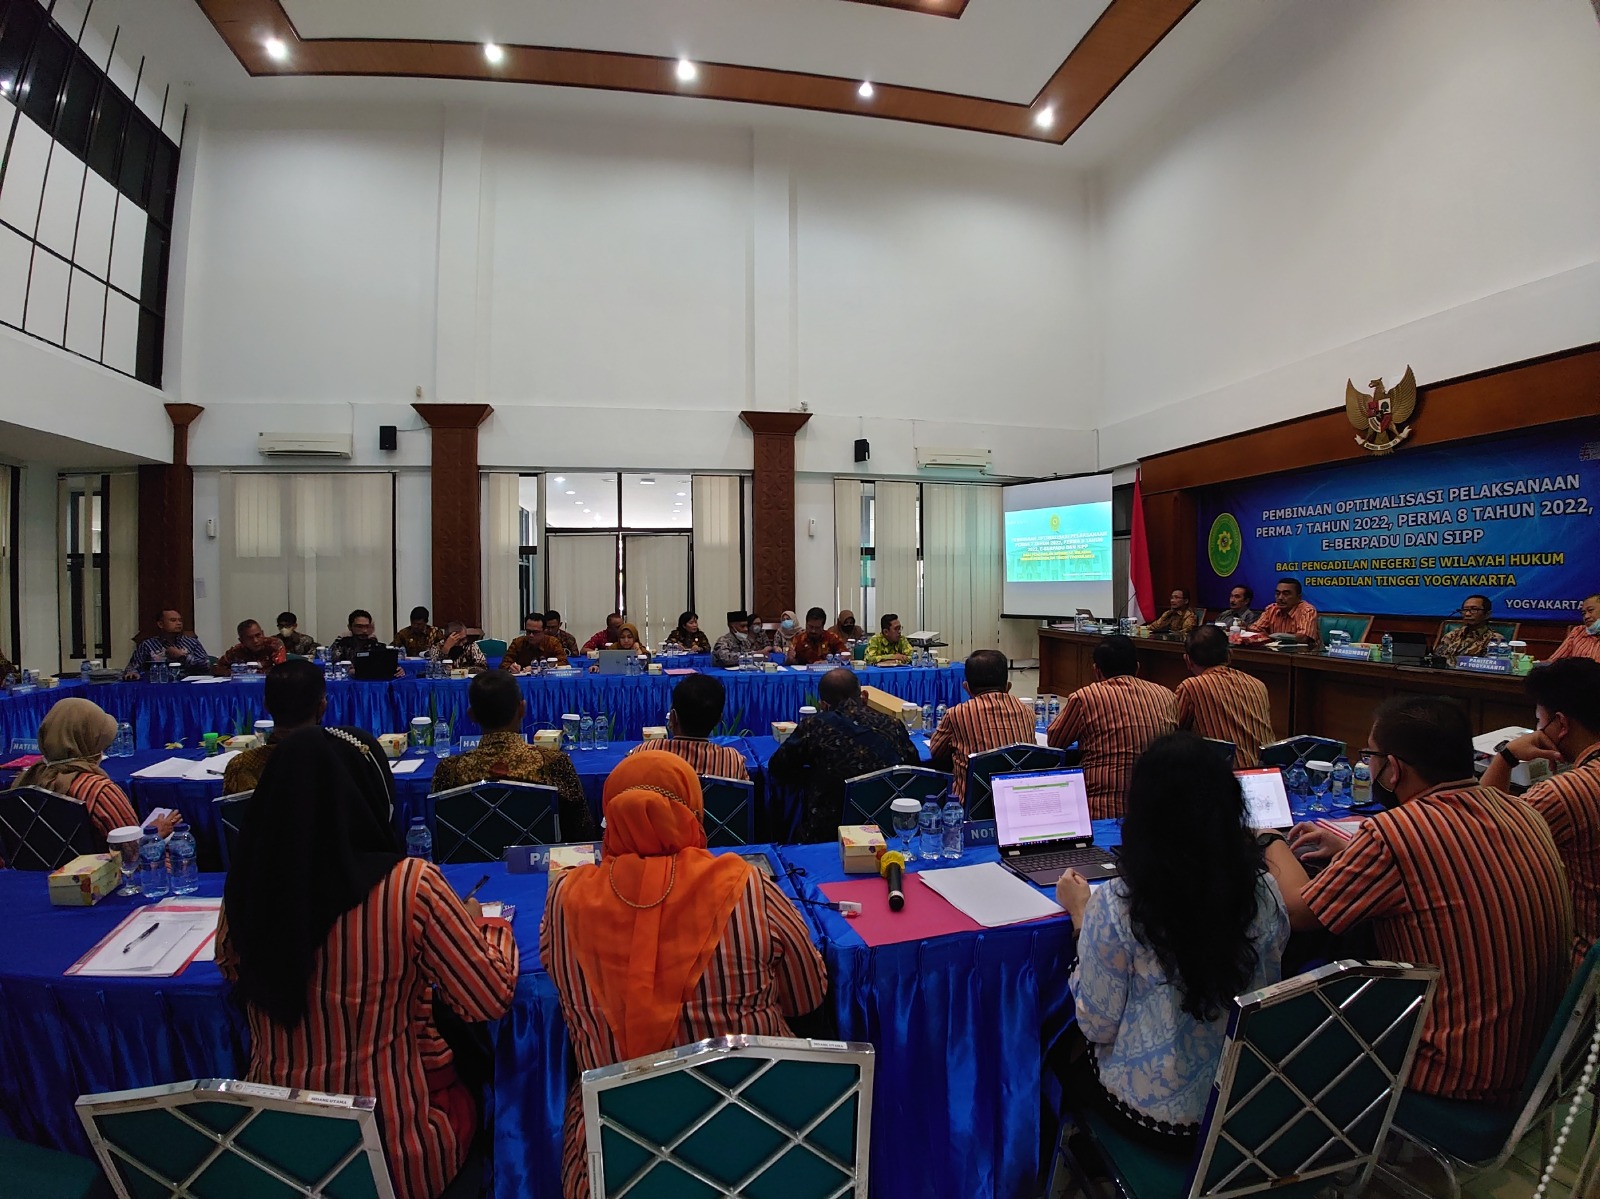 Pengadilan Negeri Yogyakarta Menghadiri Pembinaan Optimalisasi Pelaksanaan PERMA 7 dan 8 Tahun 2022, e-Berpadu dan SIPP bersama Pengadilan Tinggi Yogyakarta